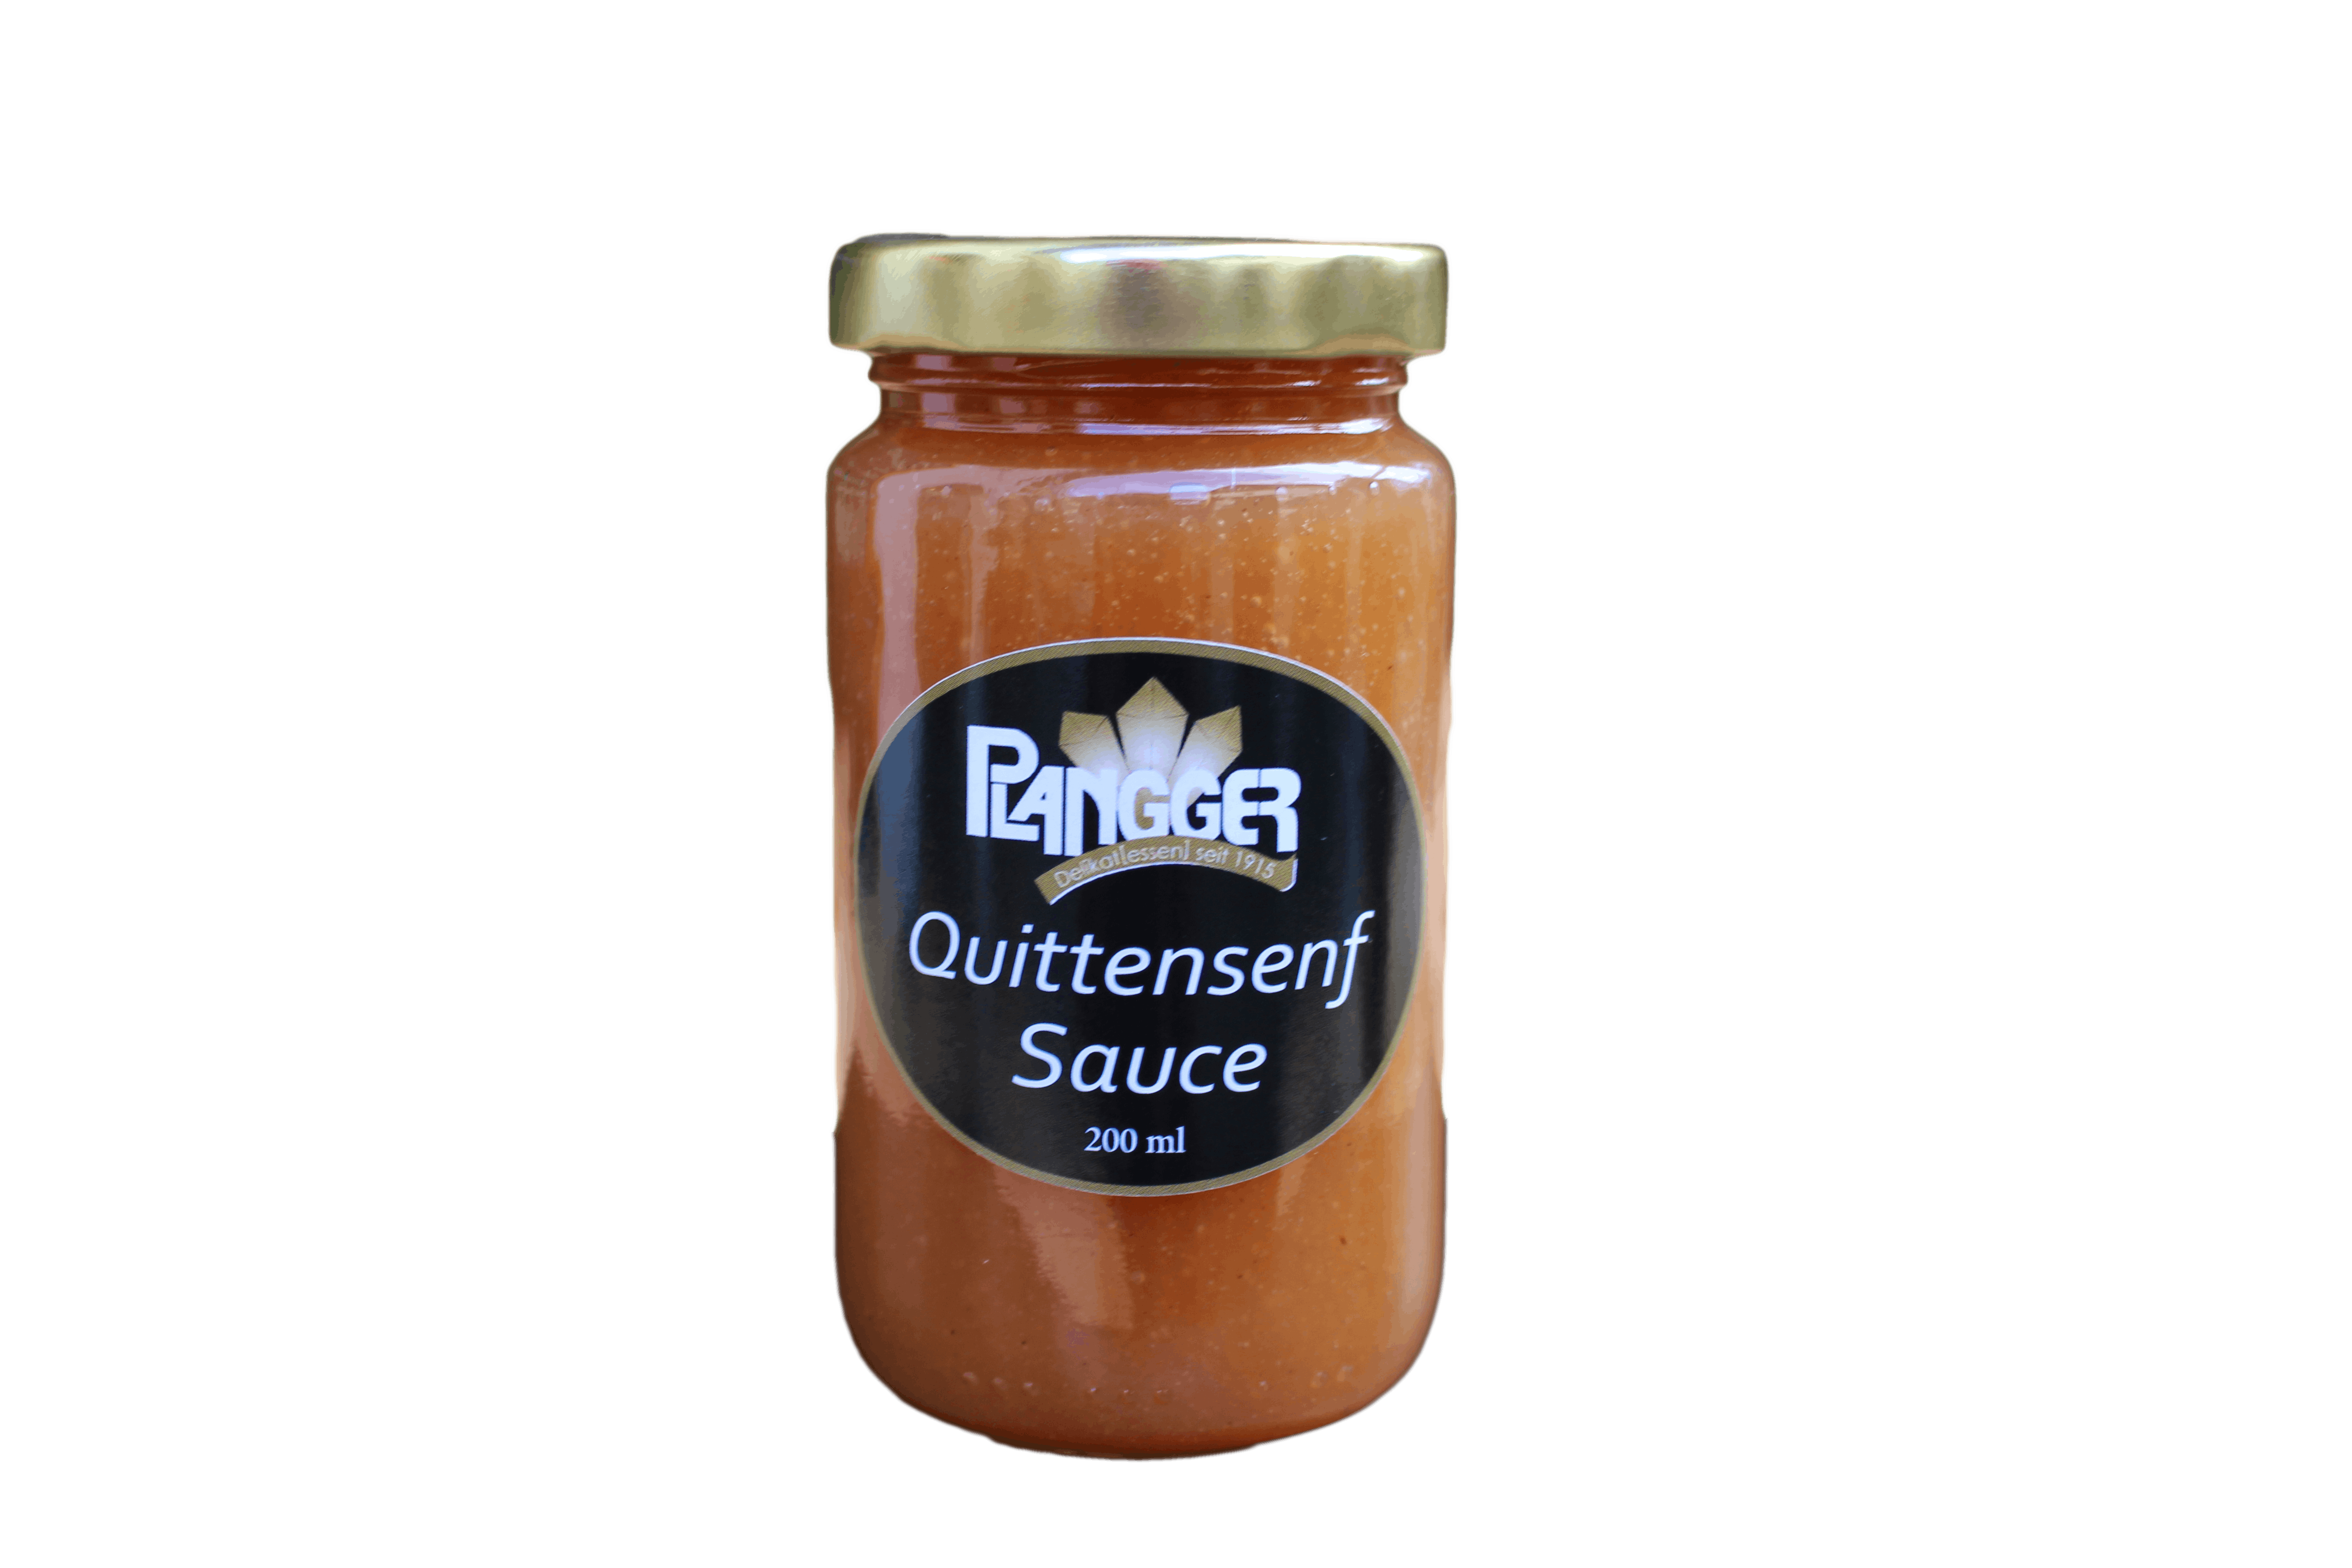 Quittensenf Sauce